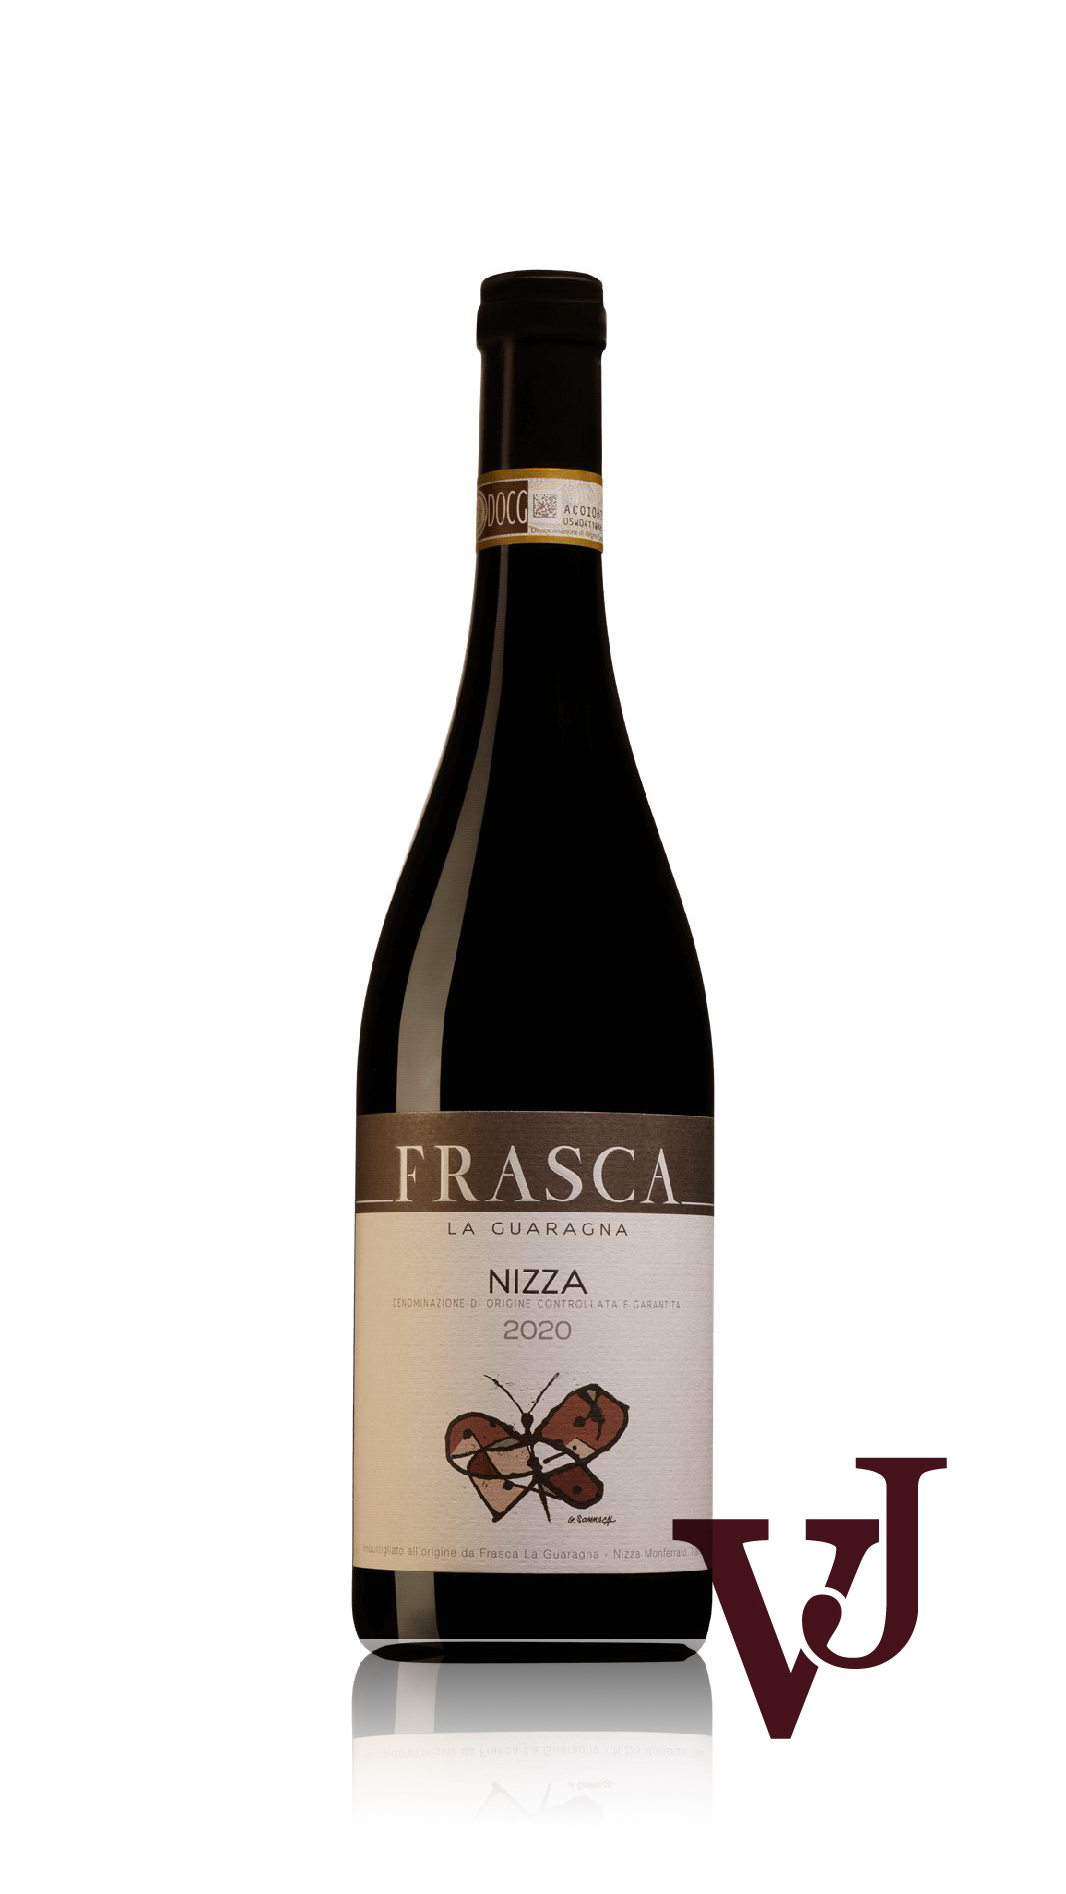 Rött Vin - Nizza Frasca la Guaragna 2020 artikel nummer 9387001 från producenten Frasca från området Italien